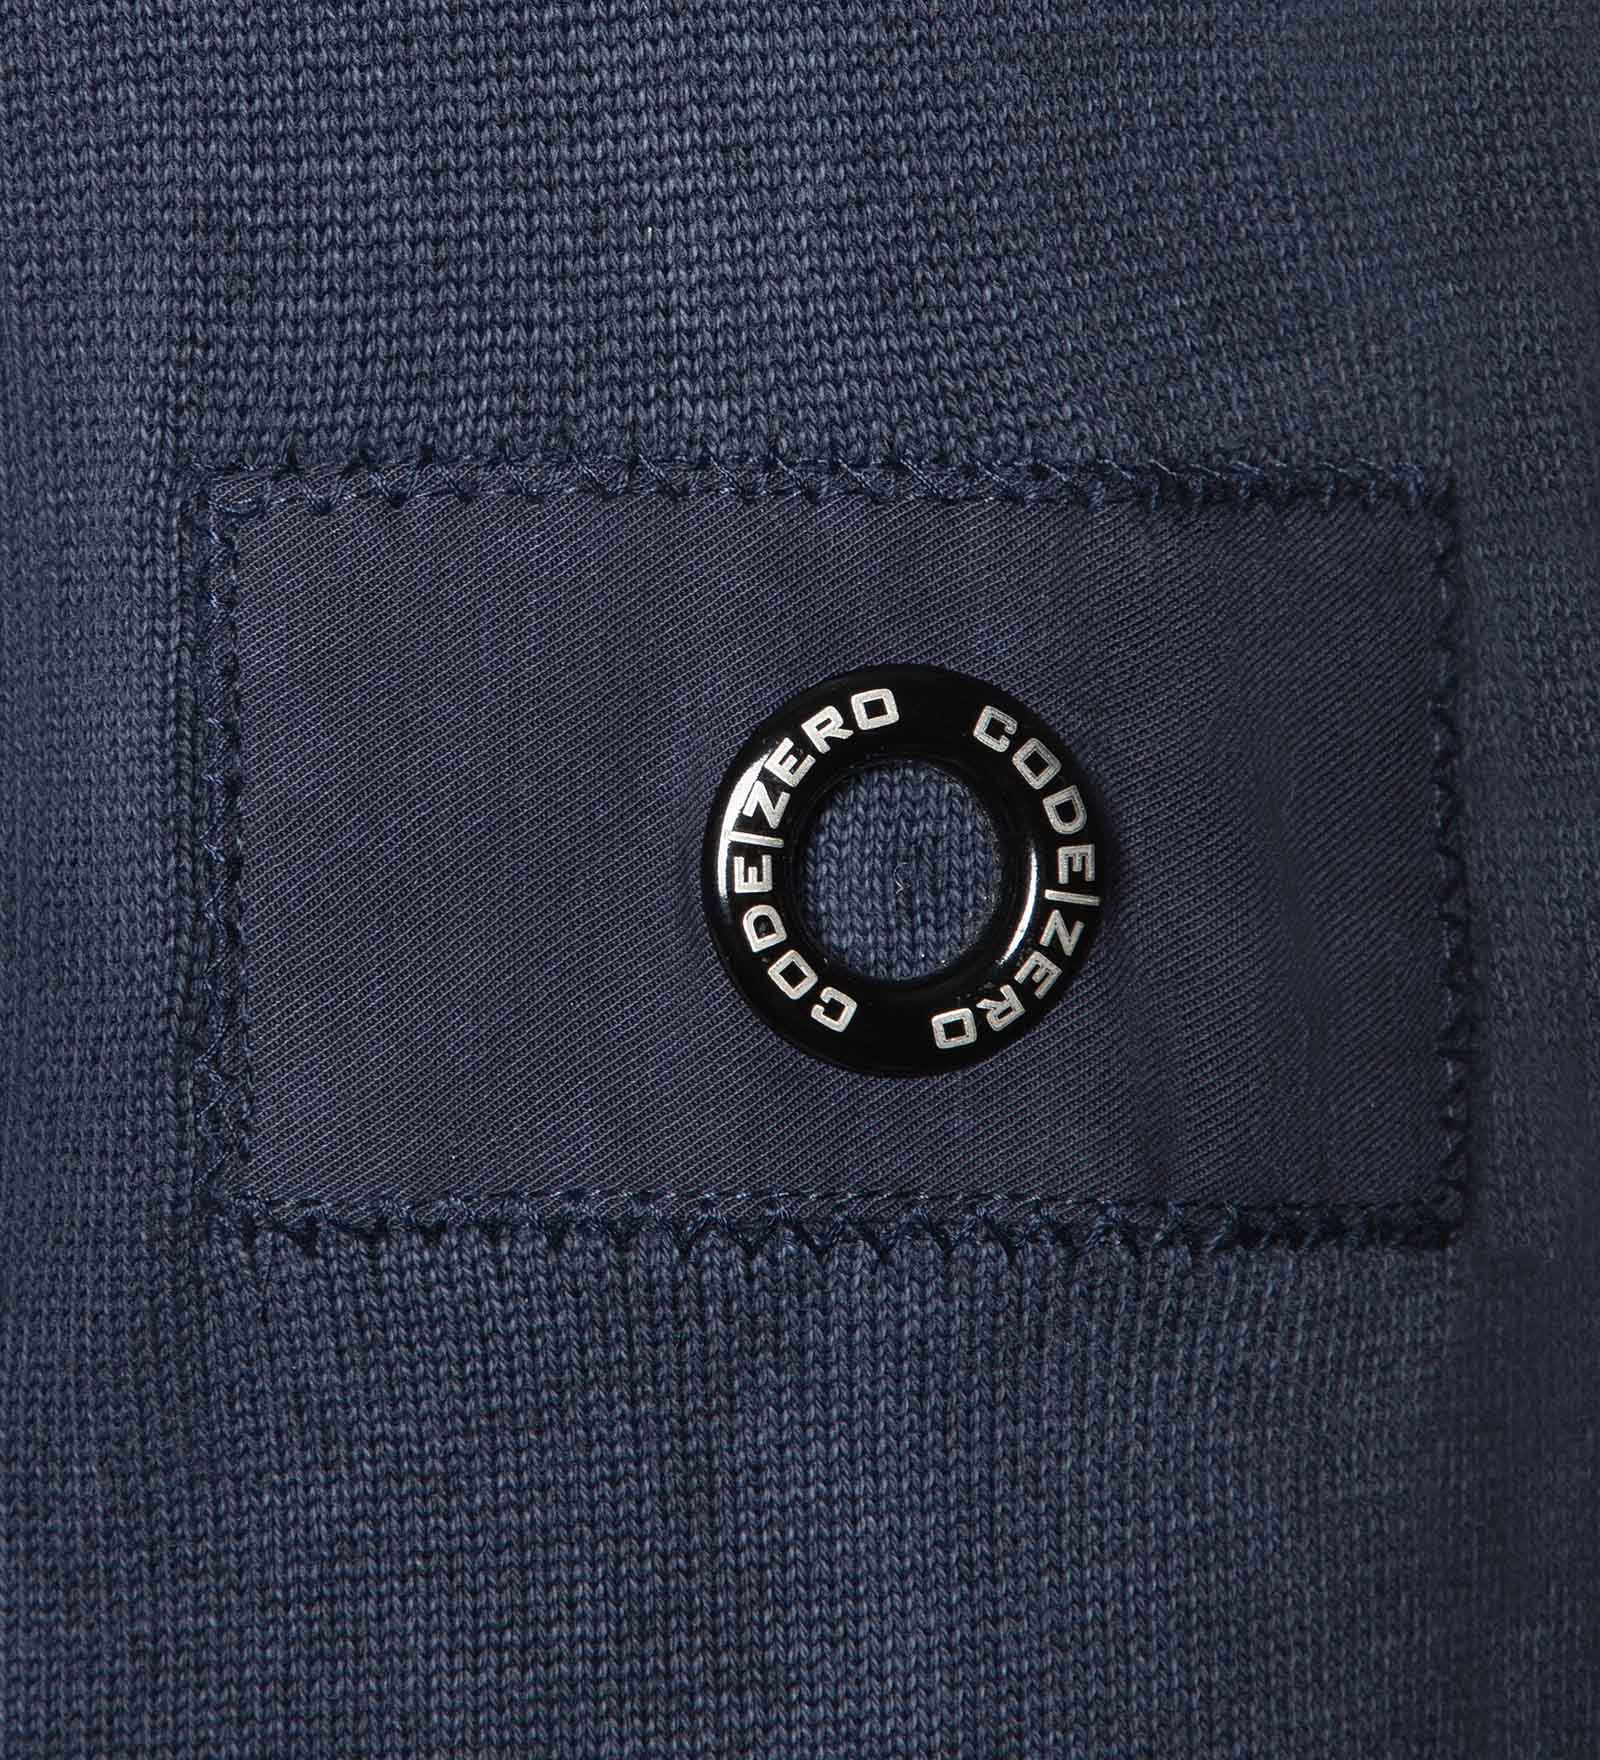 Details of a blue jumper